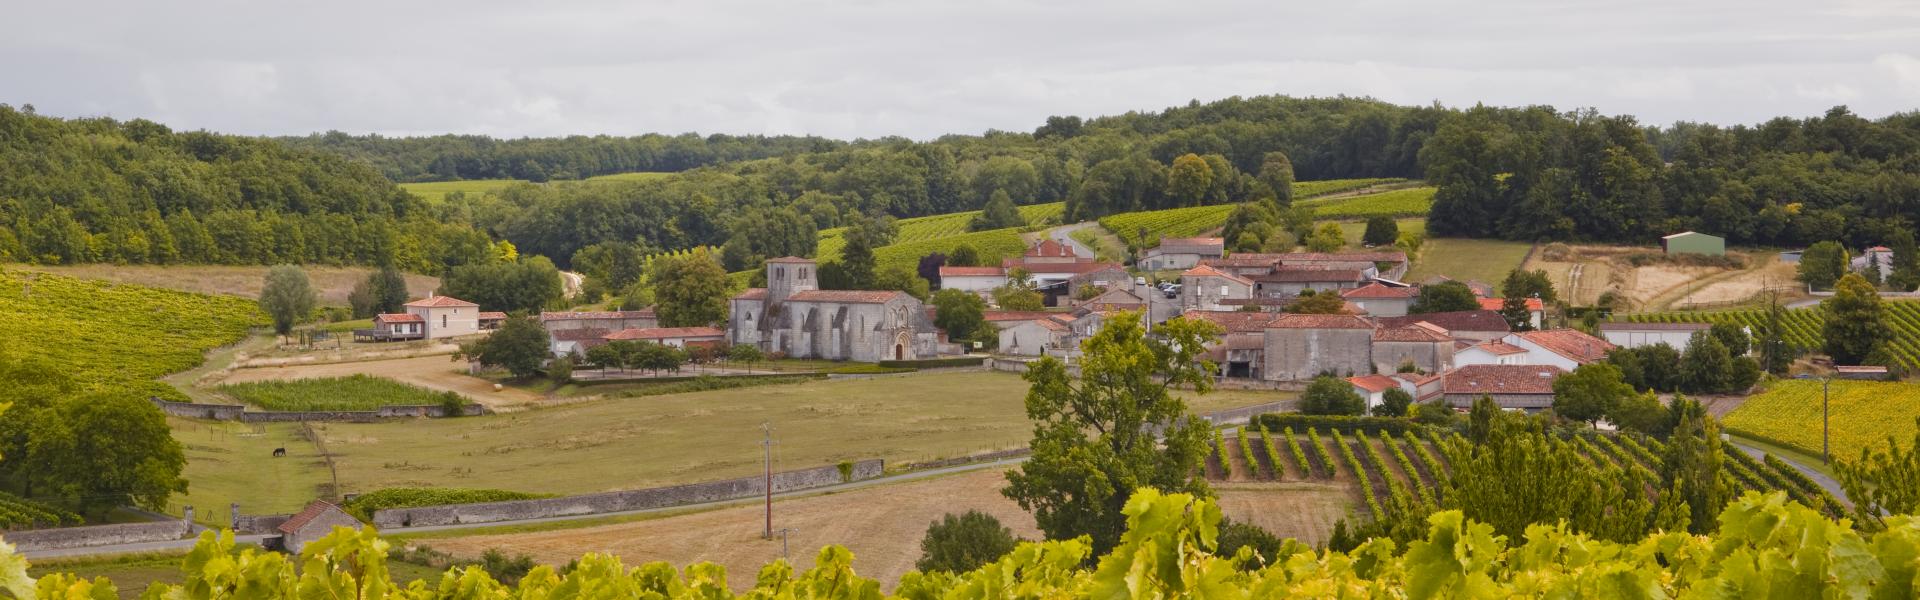 Locations de vacances et appartements à Cognac - Wimdu